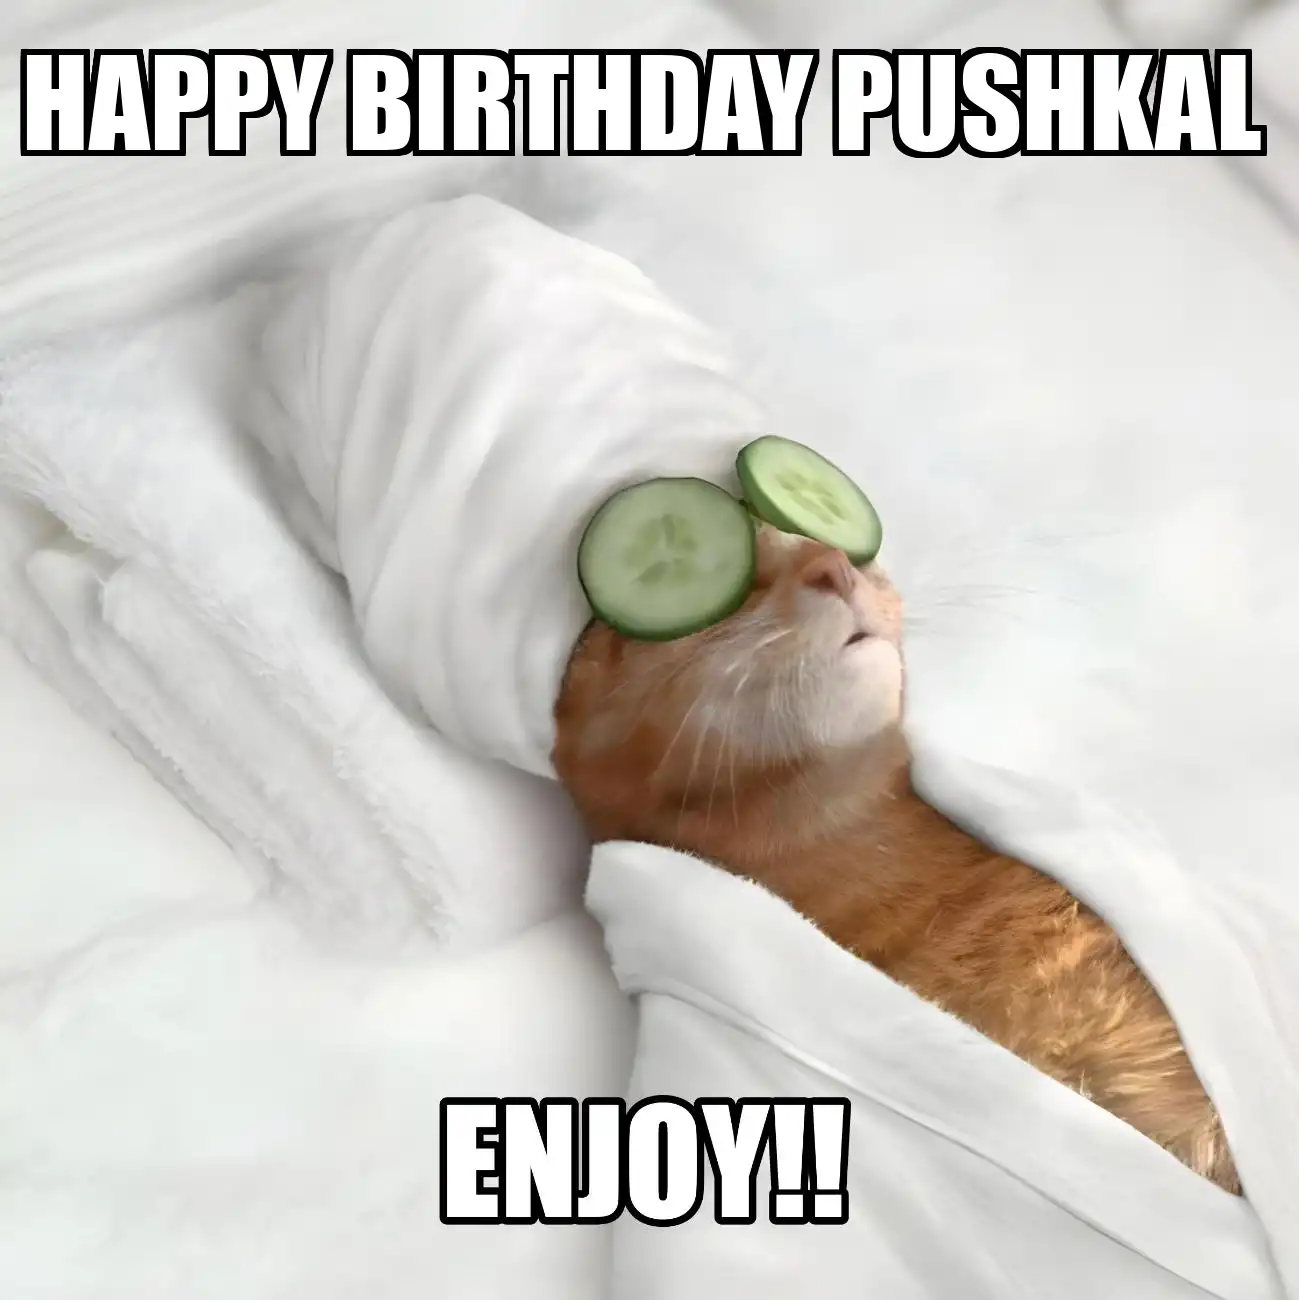 Happy Birthday Pushkal Enjoy Cat Meme